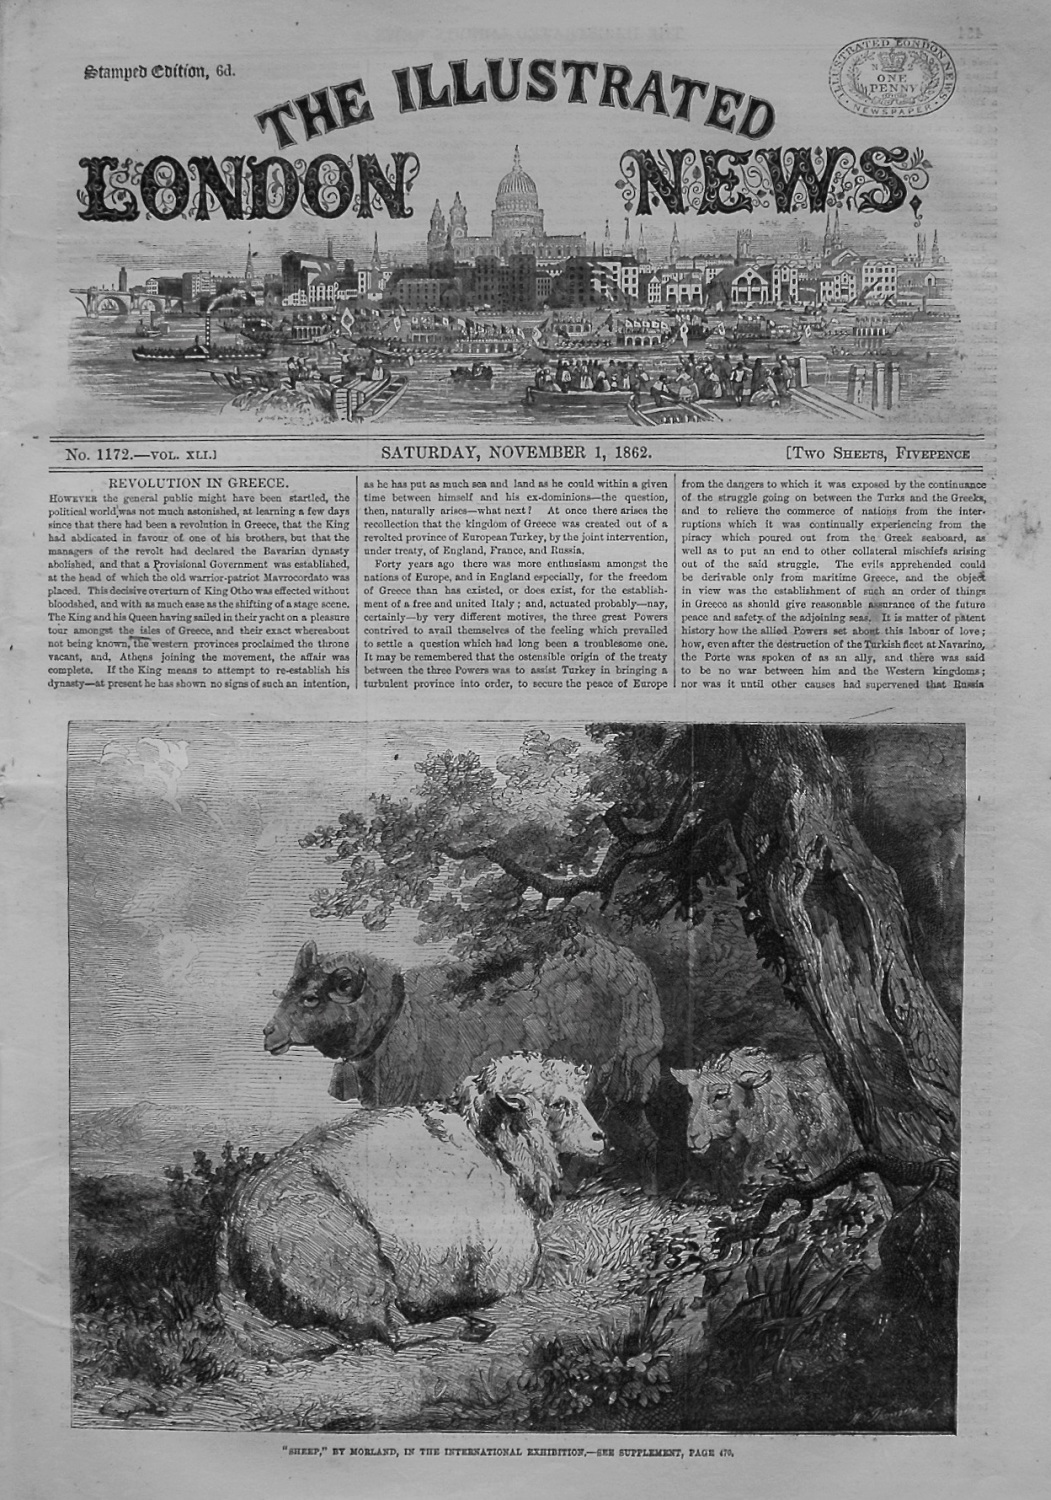 Illustrated London News. November 1st, 1862.